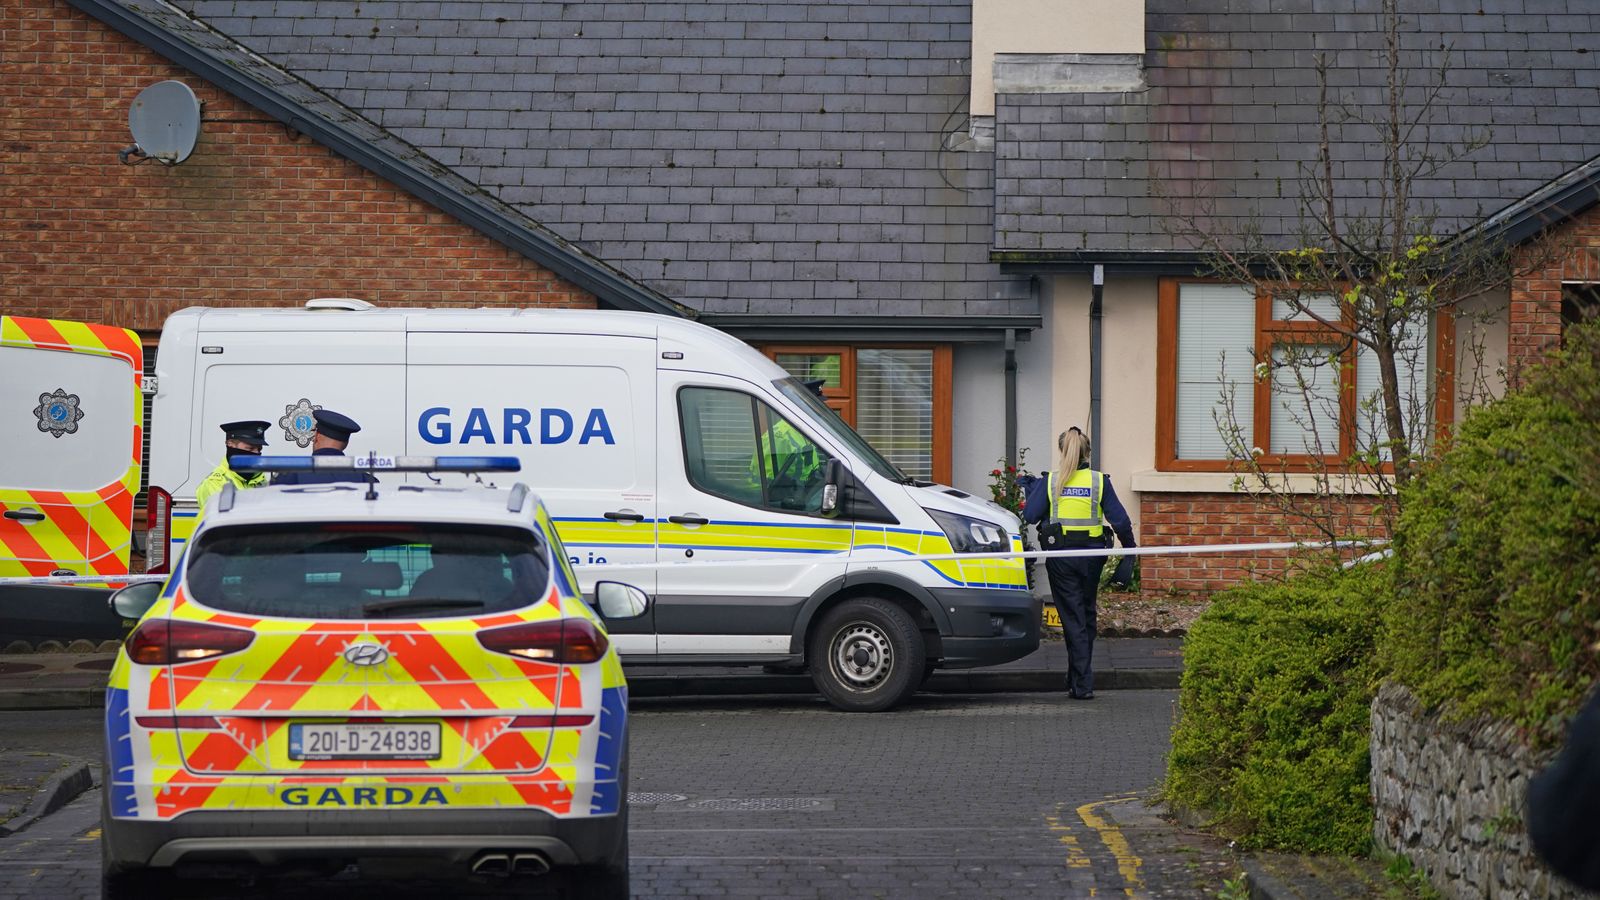 Sligo: La police enquête sur un possible motif lié à la haine après qu’un deuxième homme a été retrouvé mort avec de graves blessures |  Nouvelles du monde